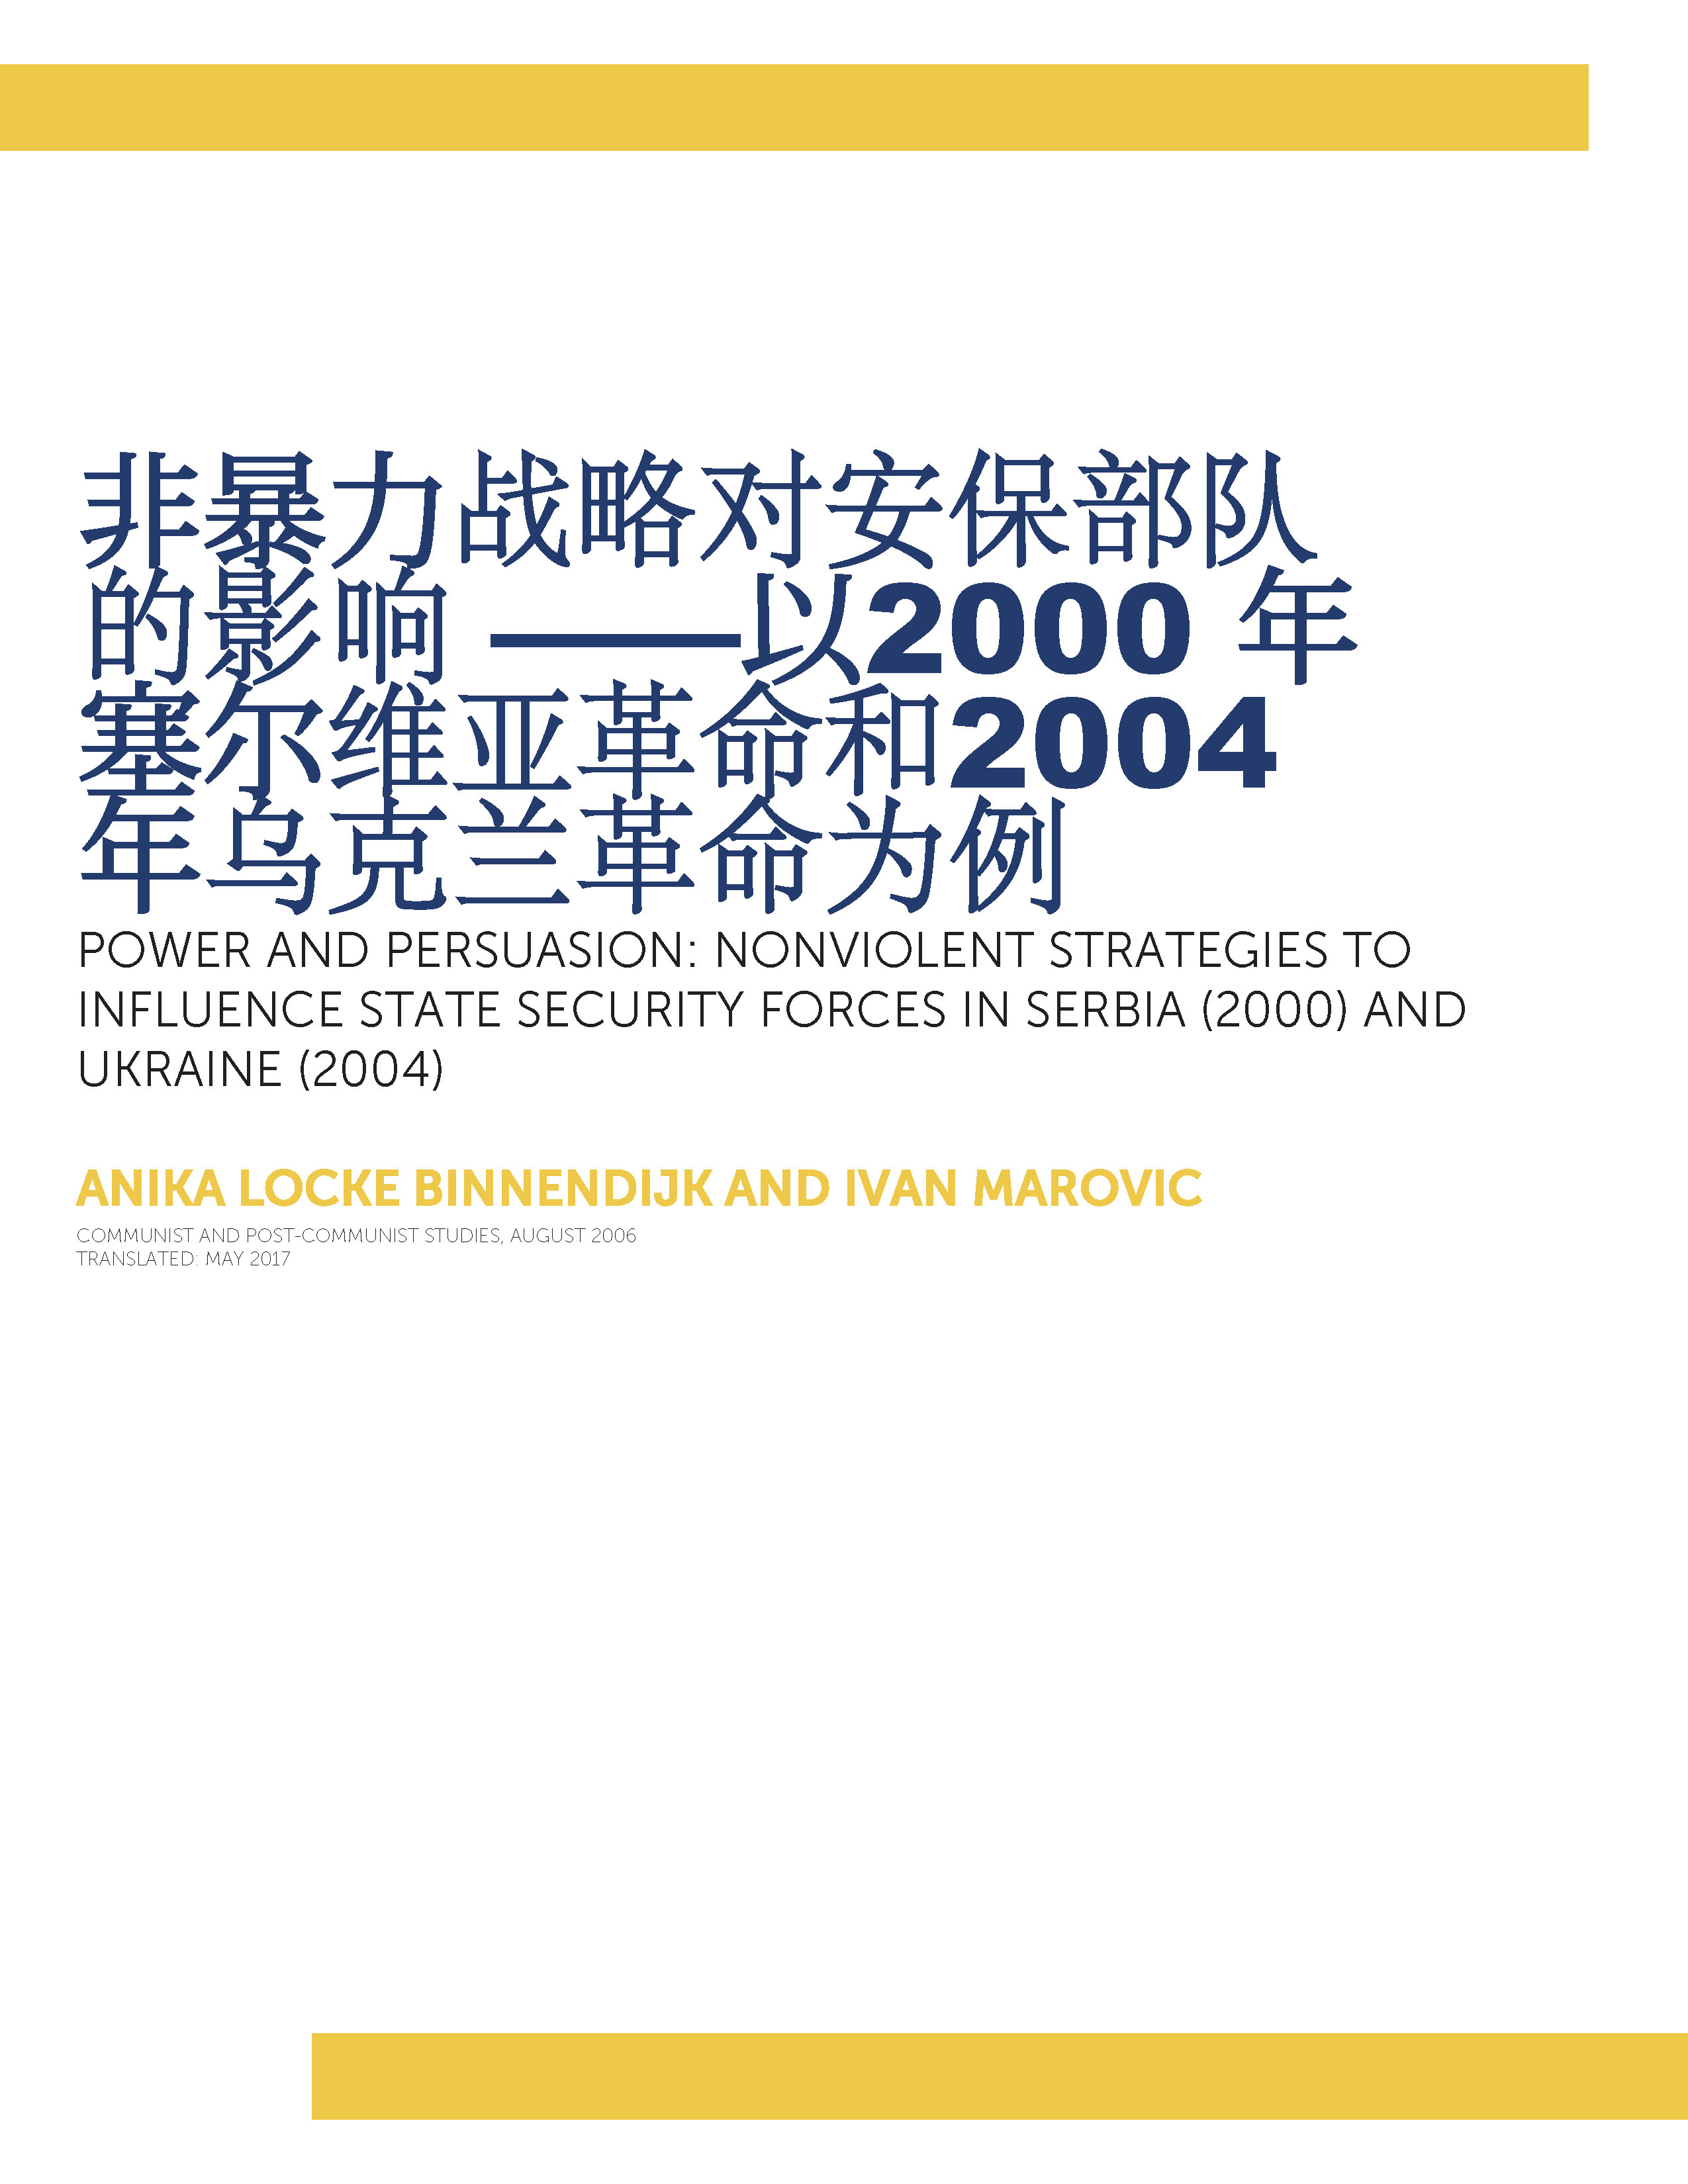 非暴力战略对安保部队的影响 ——以2000 年塞尔维亚革命和2004 年乌克兰革命为例